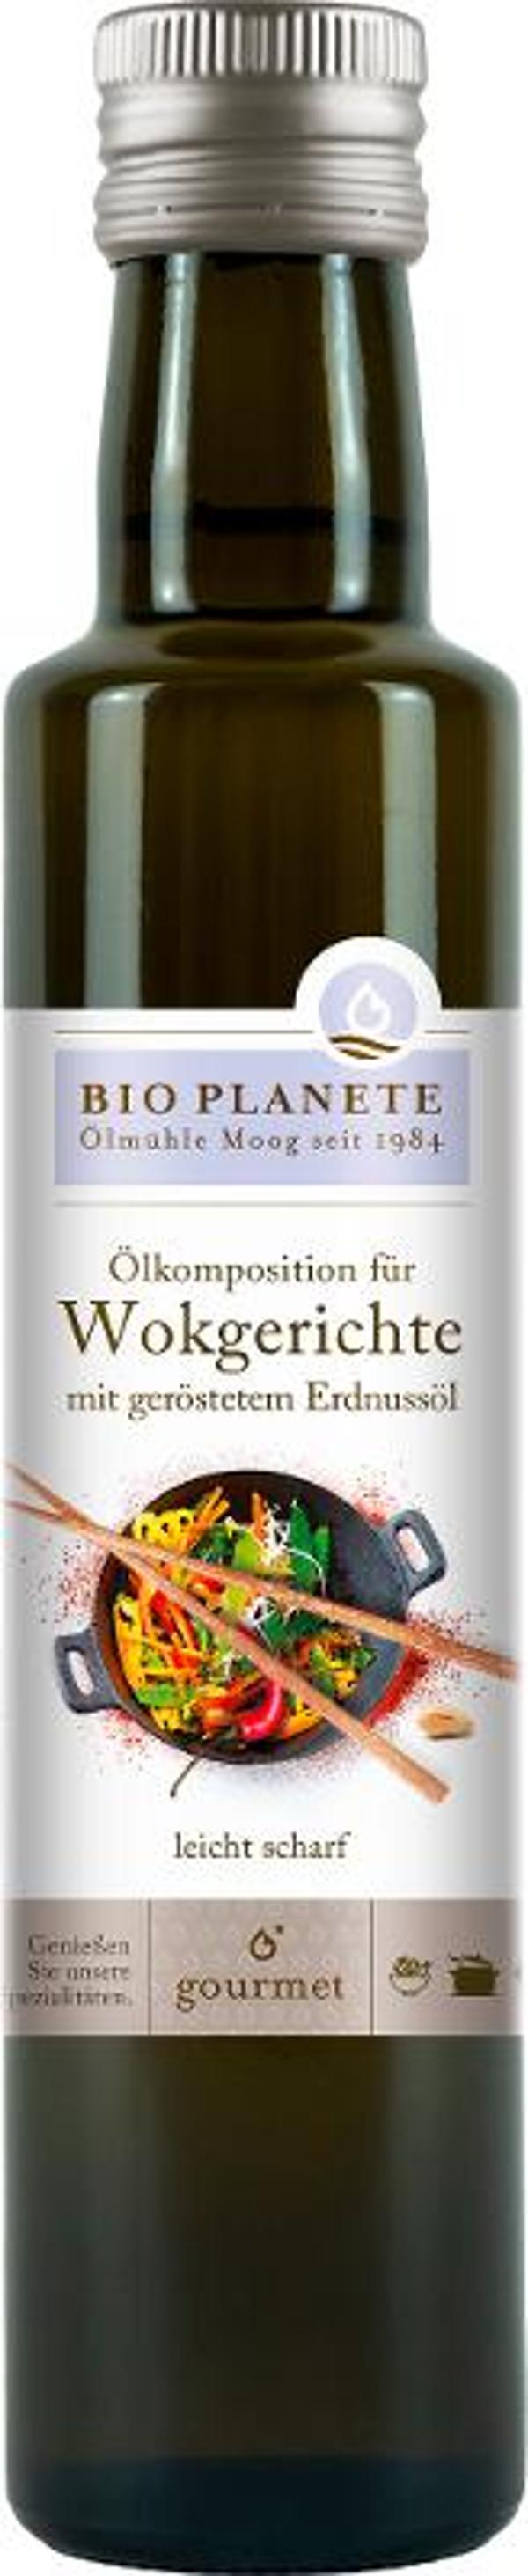 Produktfoto zu Ölkomposition für Wokgerichte 250 ml Bio Planète